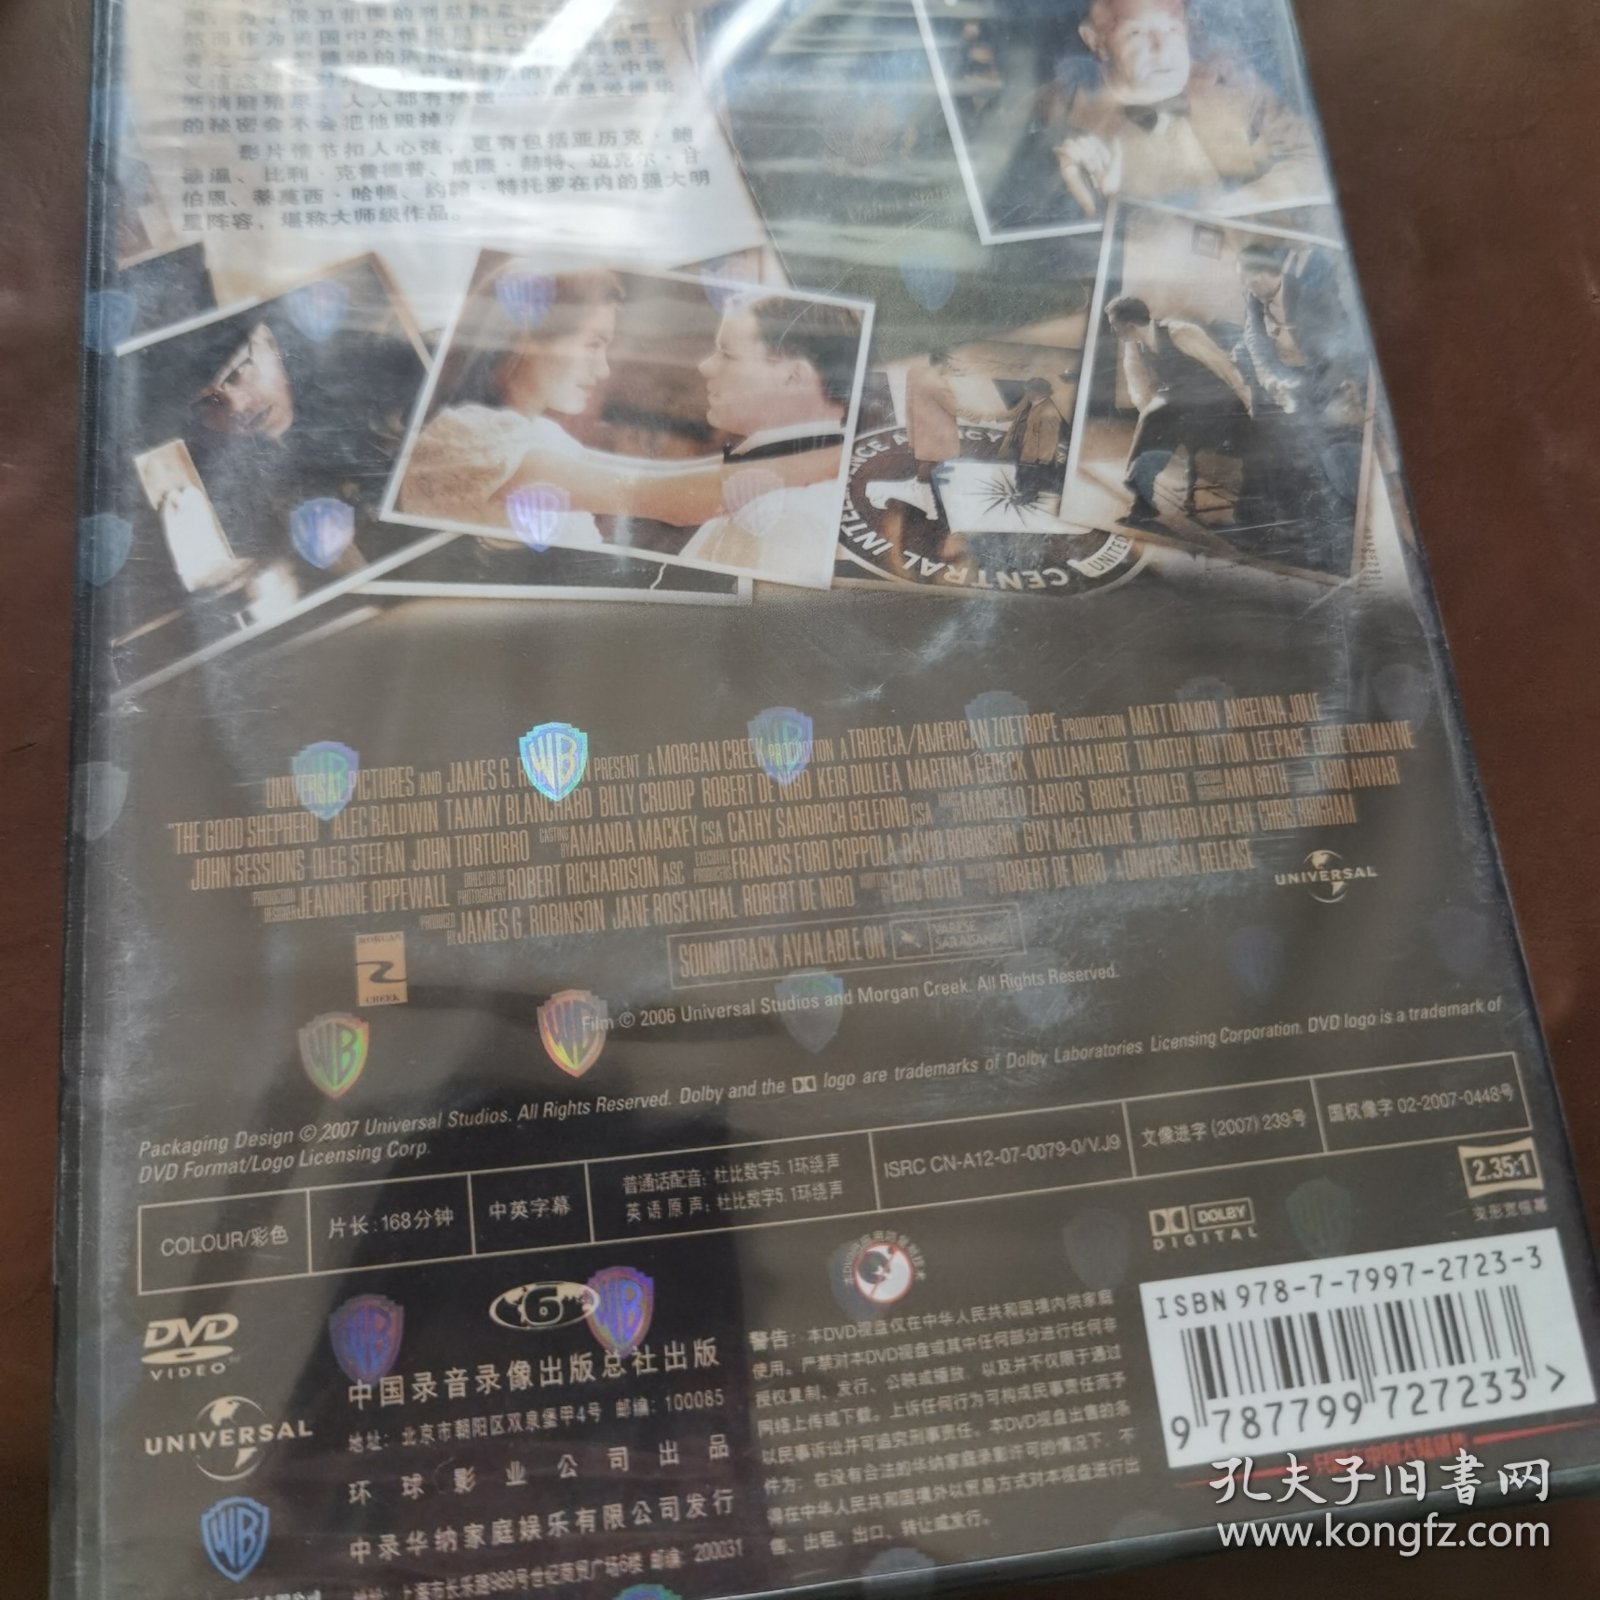 特务风云 盒装DVD-9(全新未拆封)